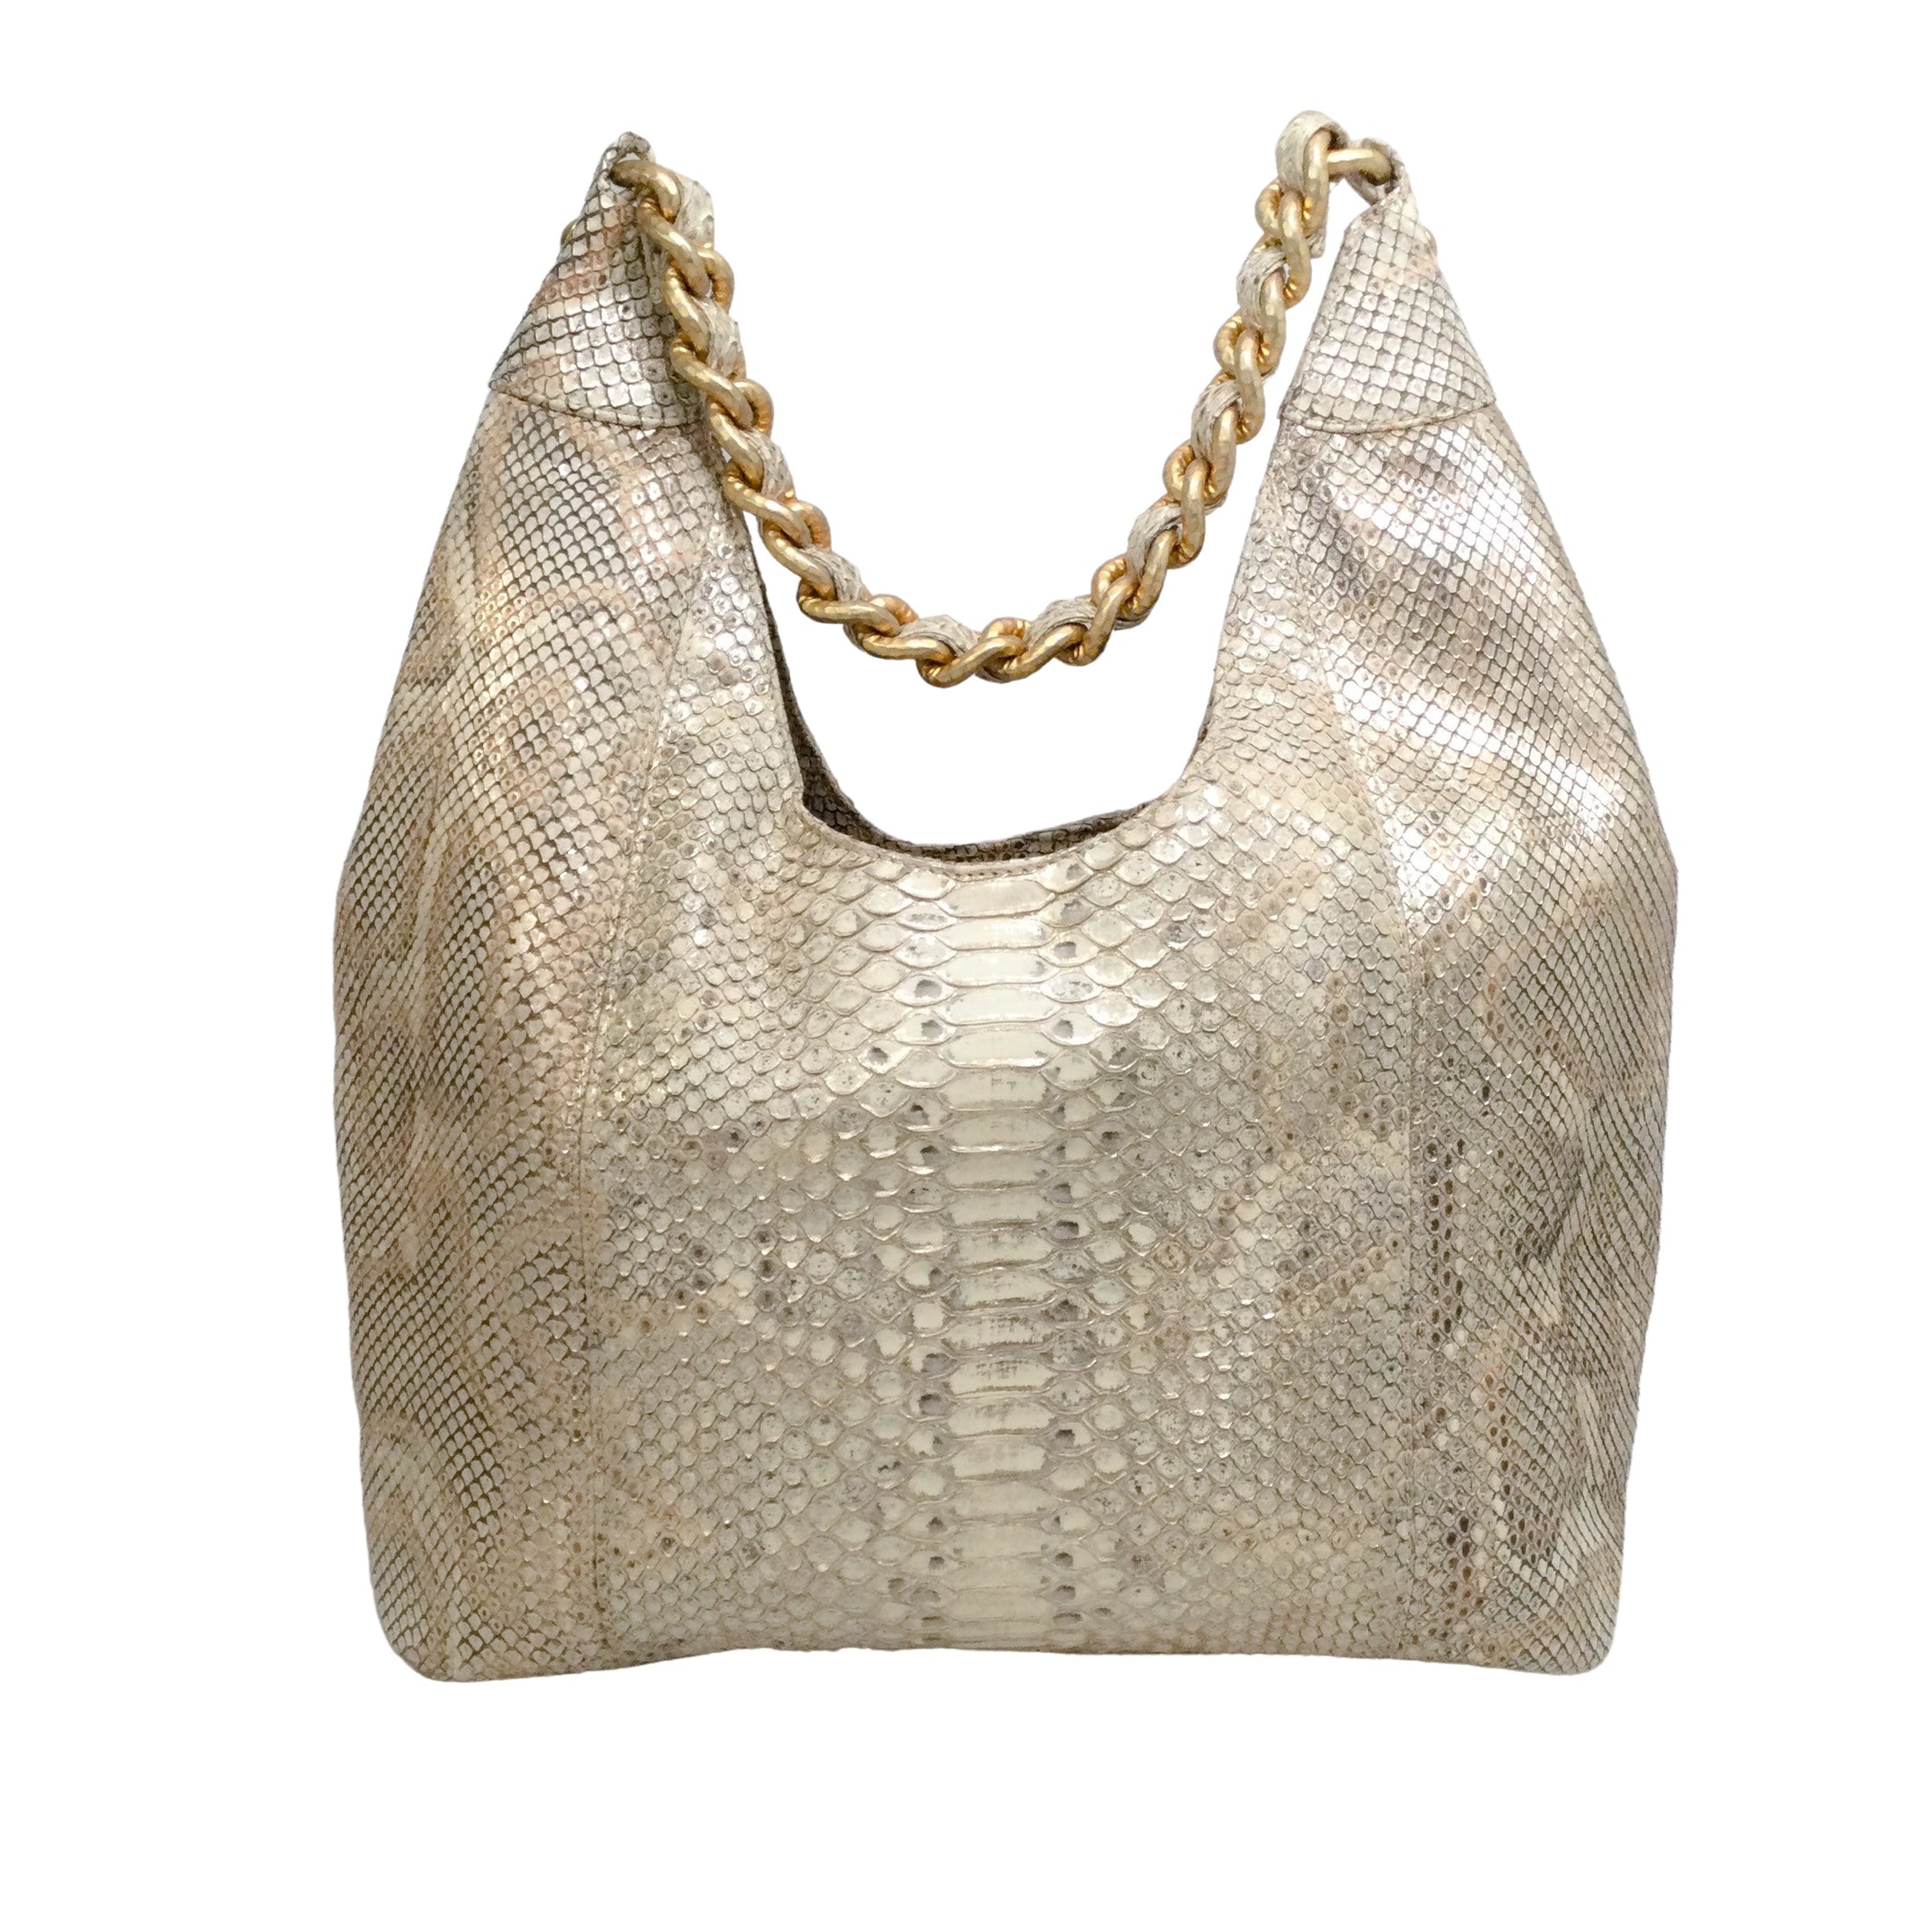 Chanel 2014-2015 Paris - Dallas Beige Snakeskin Leather Shoulder Bag